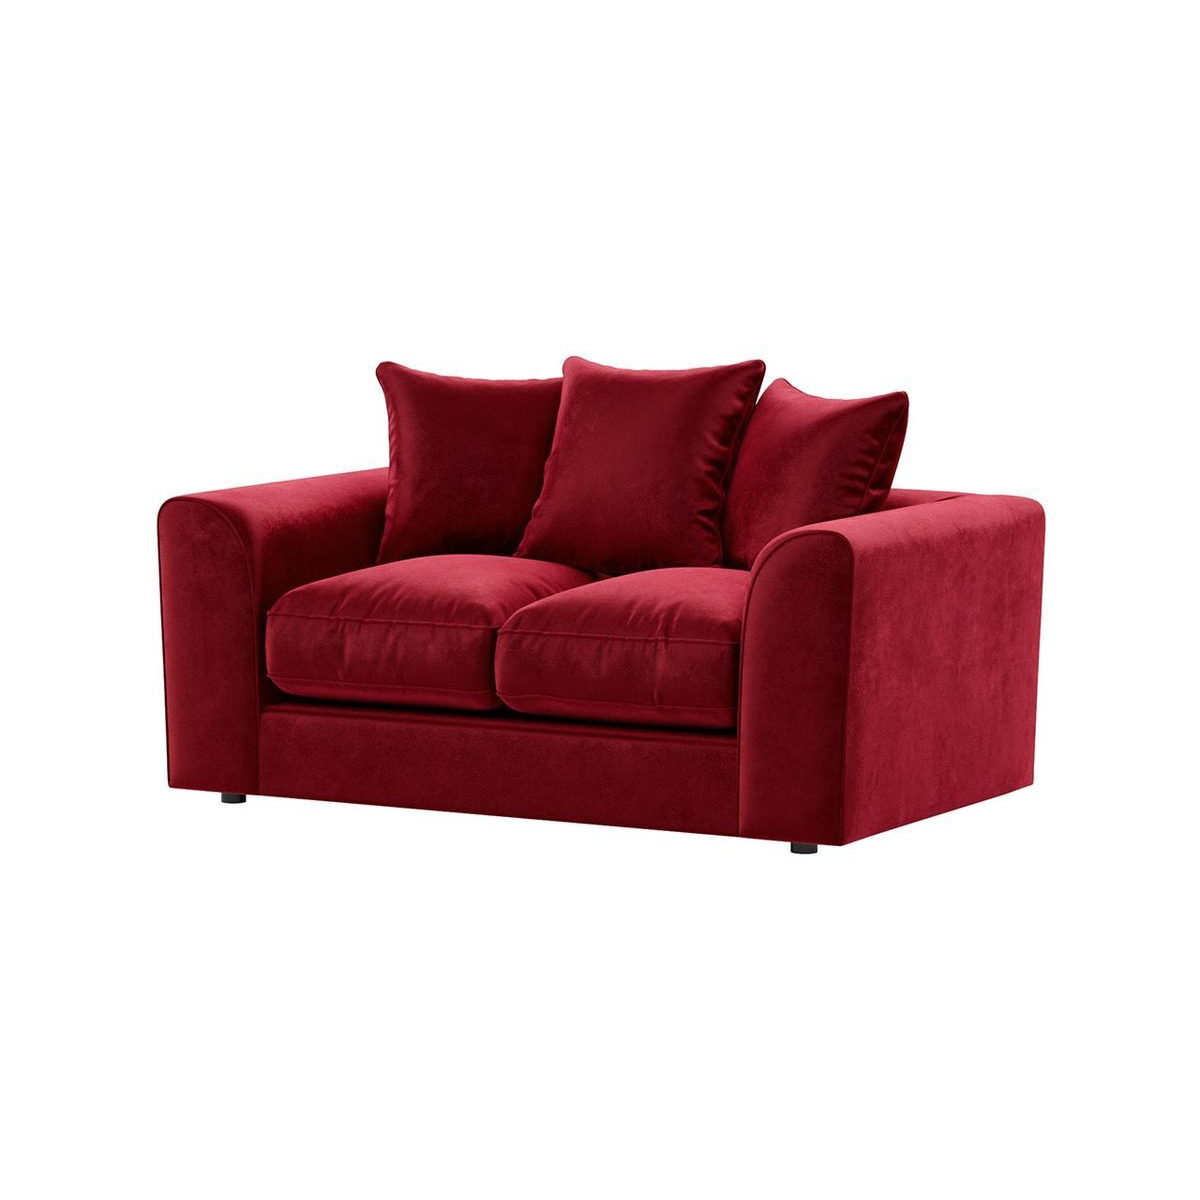 Dillon Velvet 2 Seater Sofa Bed, dark red - image 1